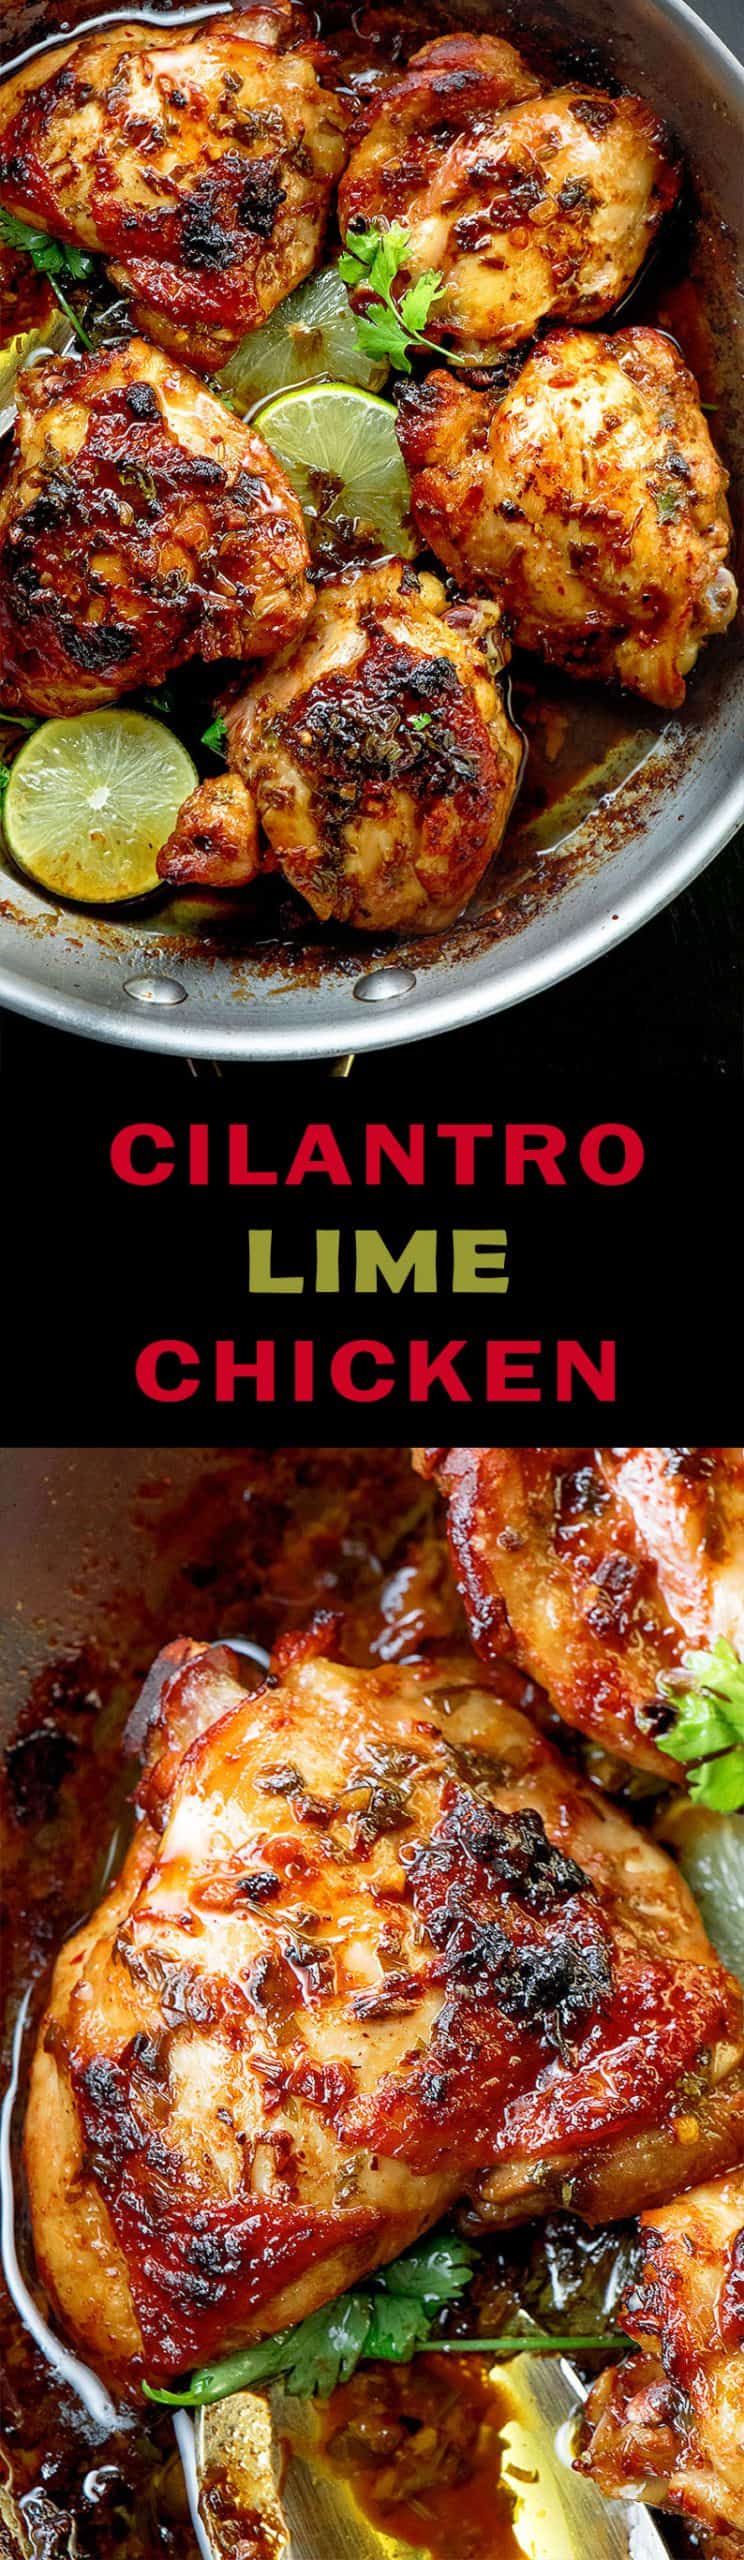 cilantro-lime-chicken